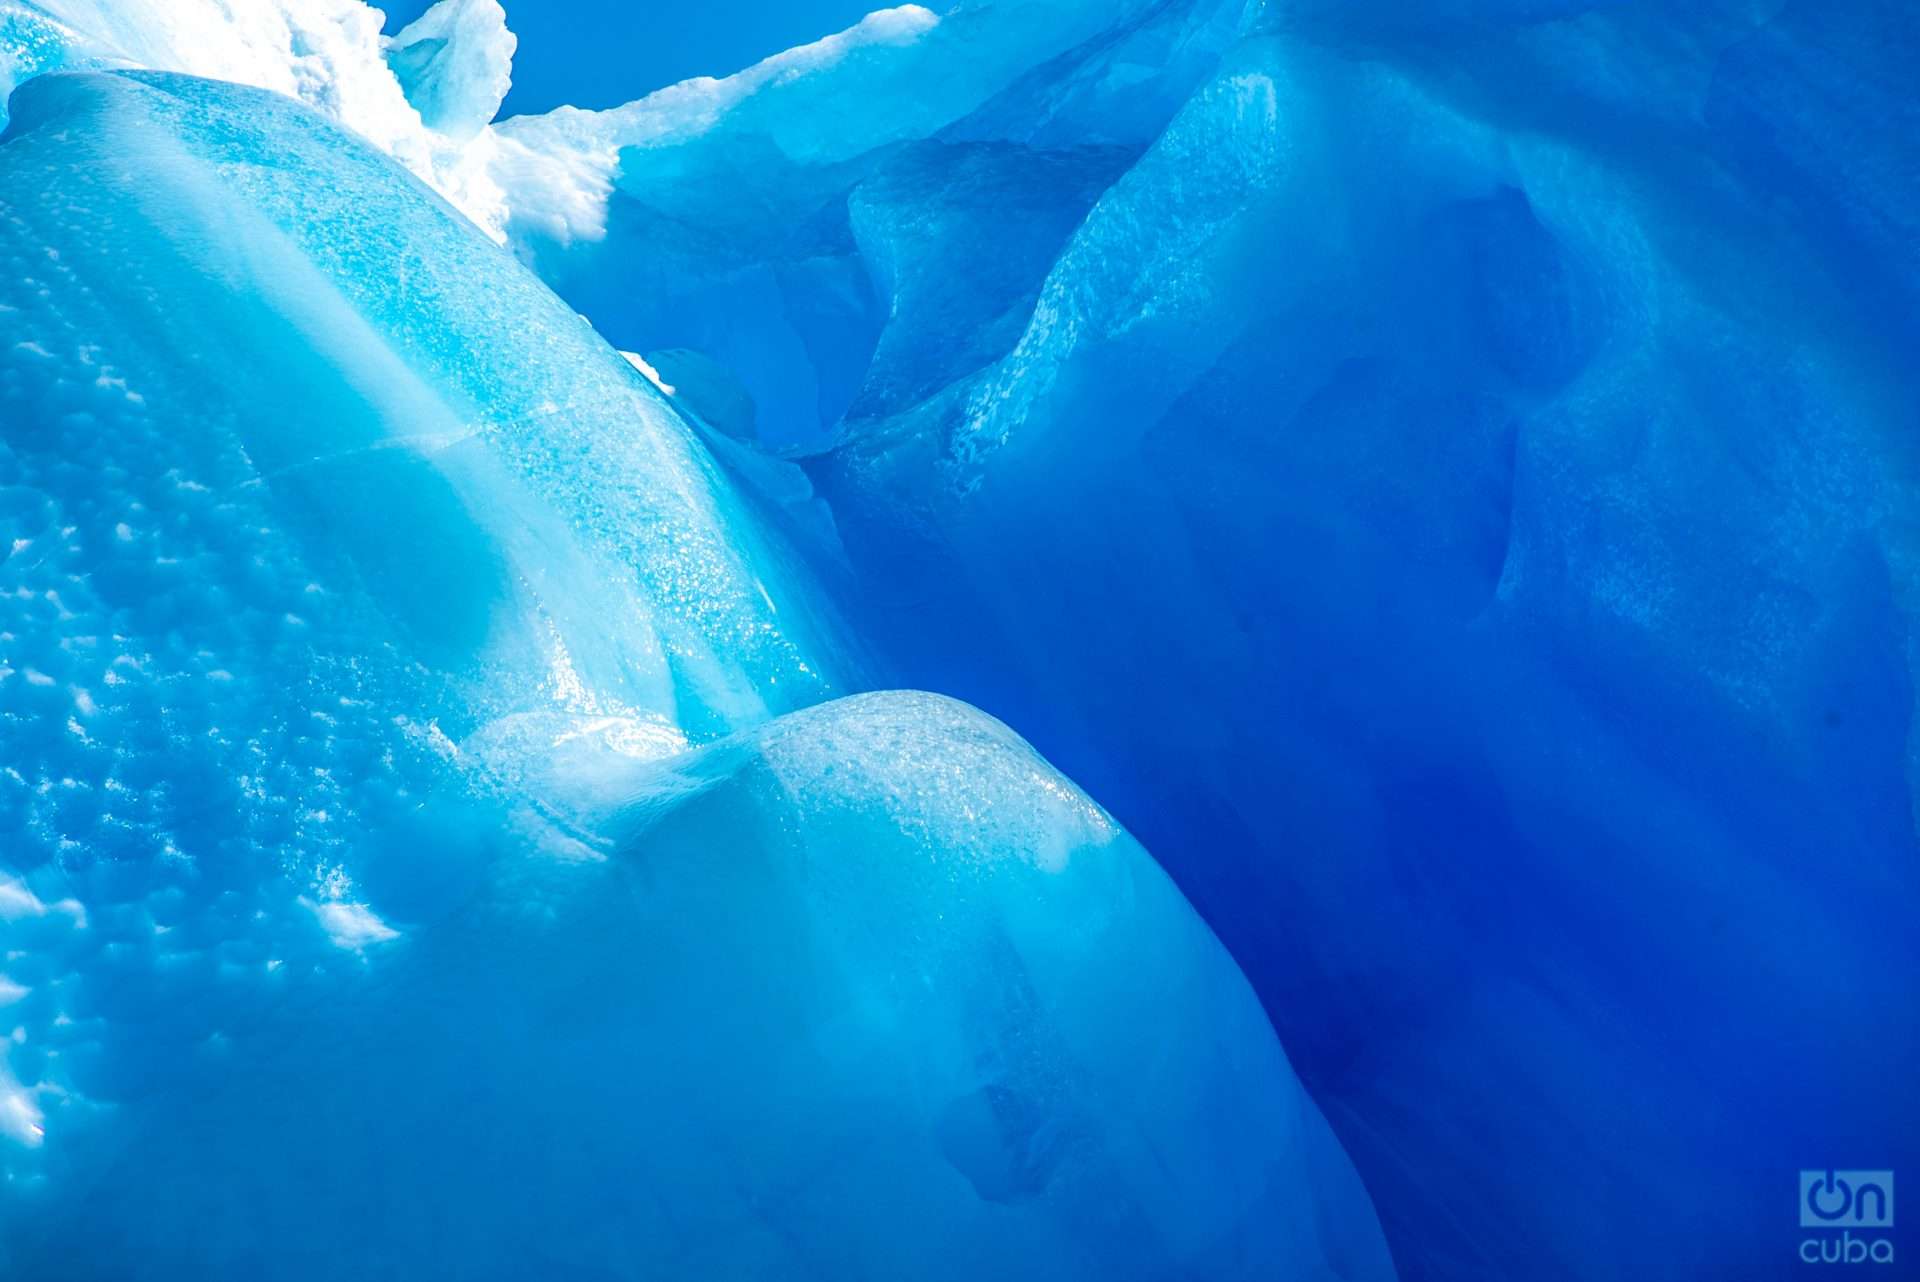 El hielo puro es azul porque absorbe más la luz roja y refleja luz azul.